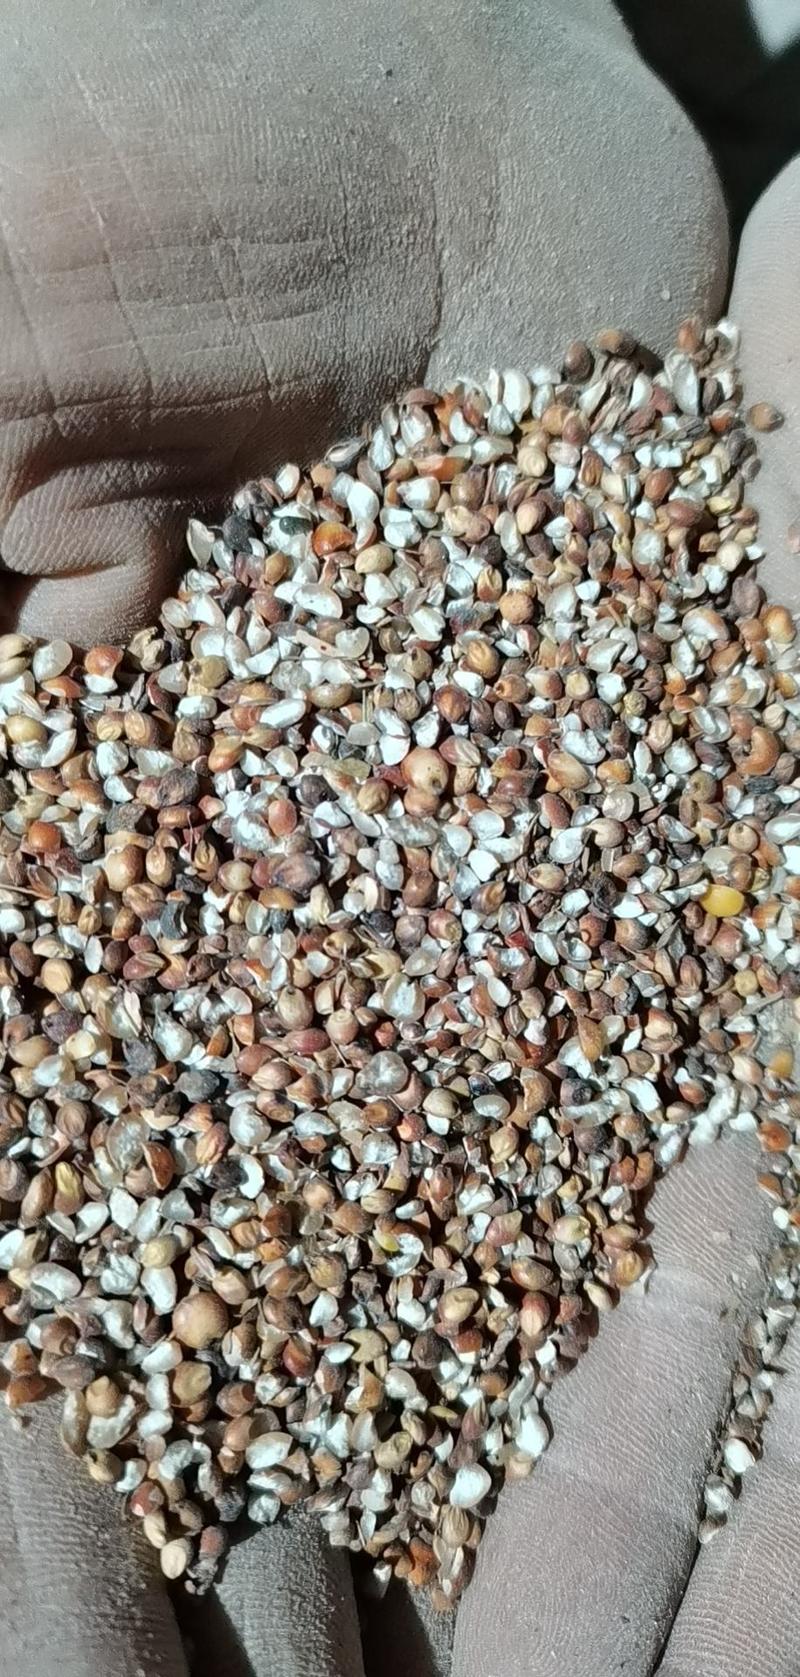 碎米高粱碎米饲料原料高粱碎米厂家直供。货源稳定